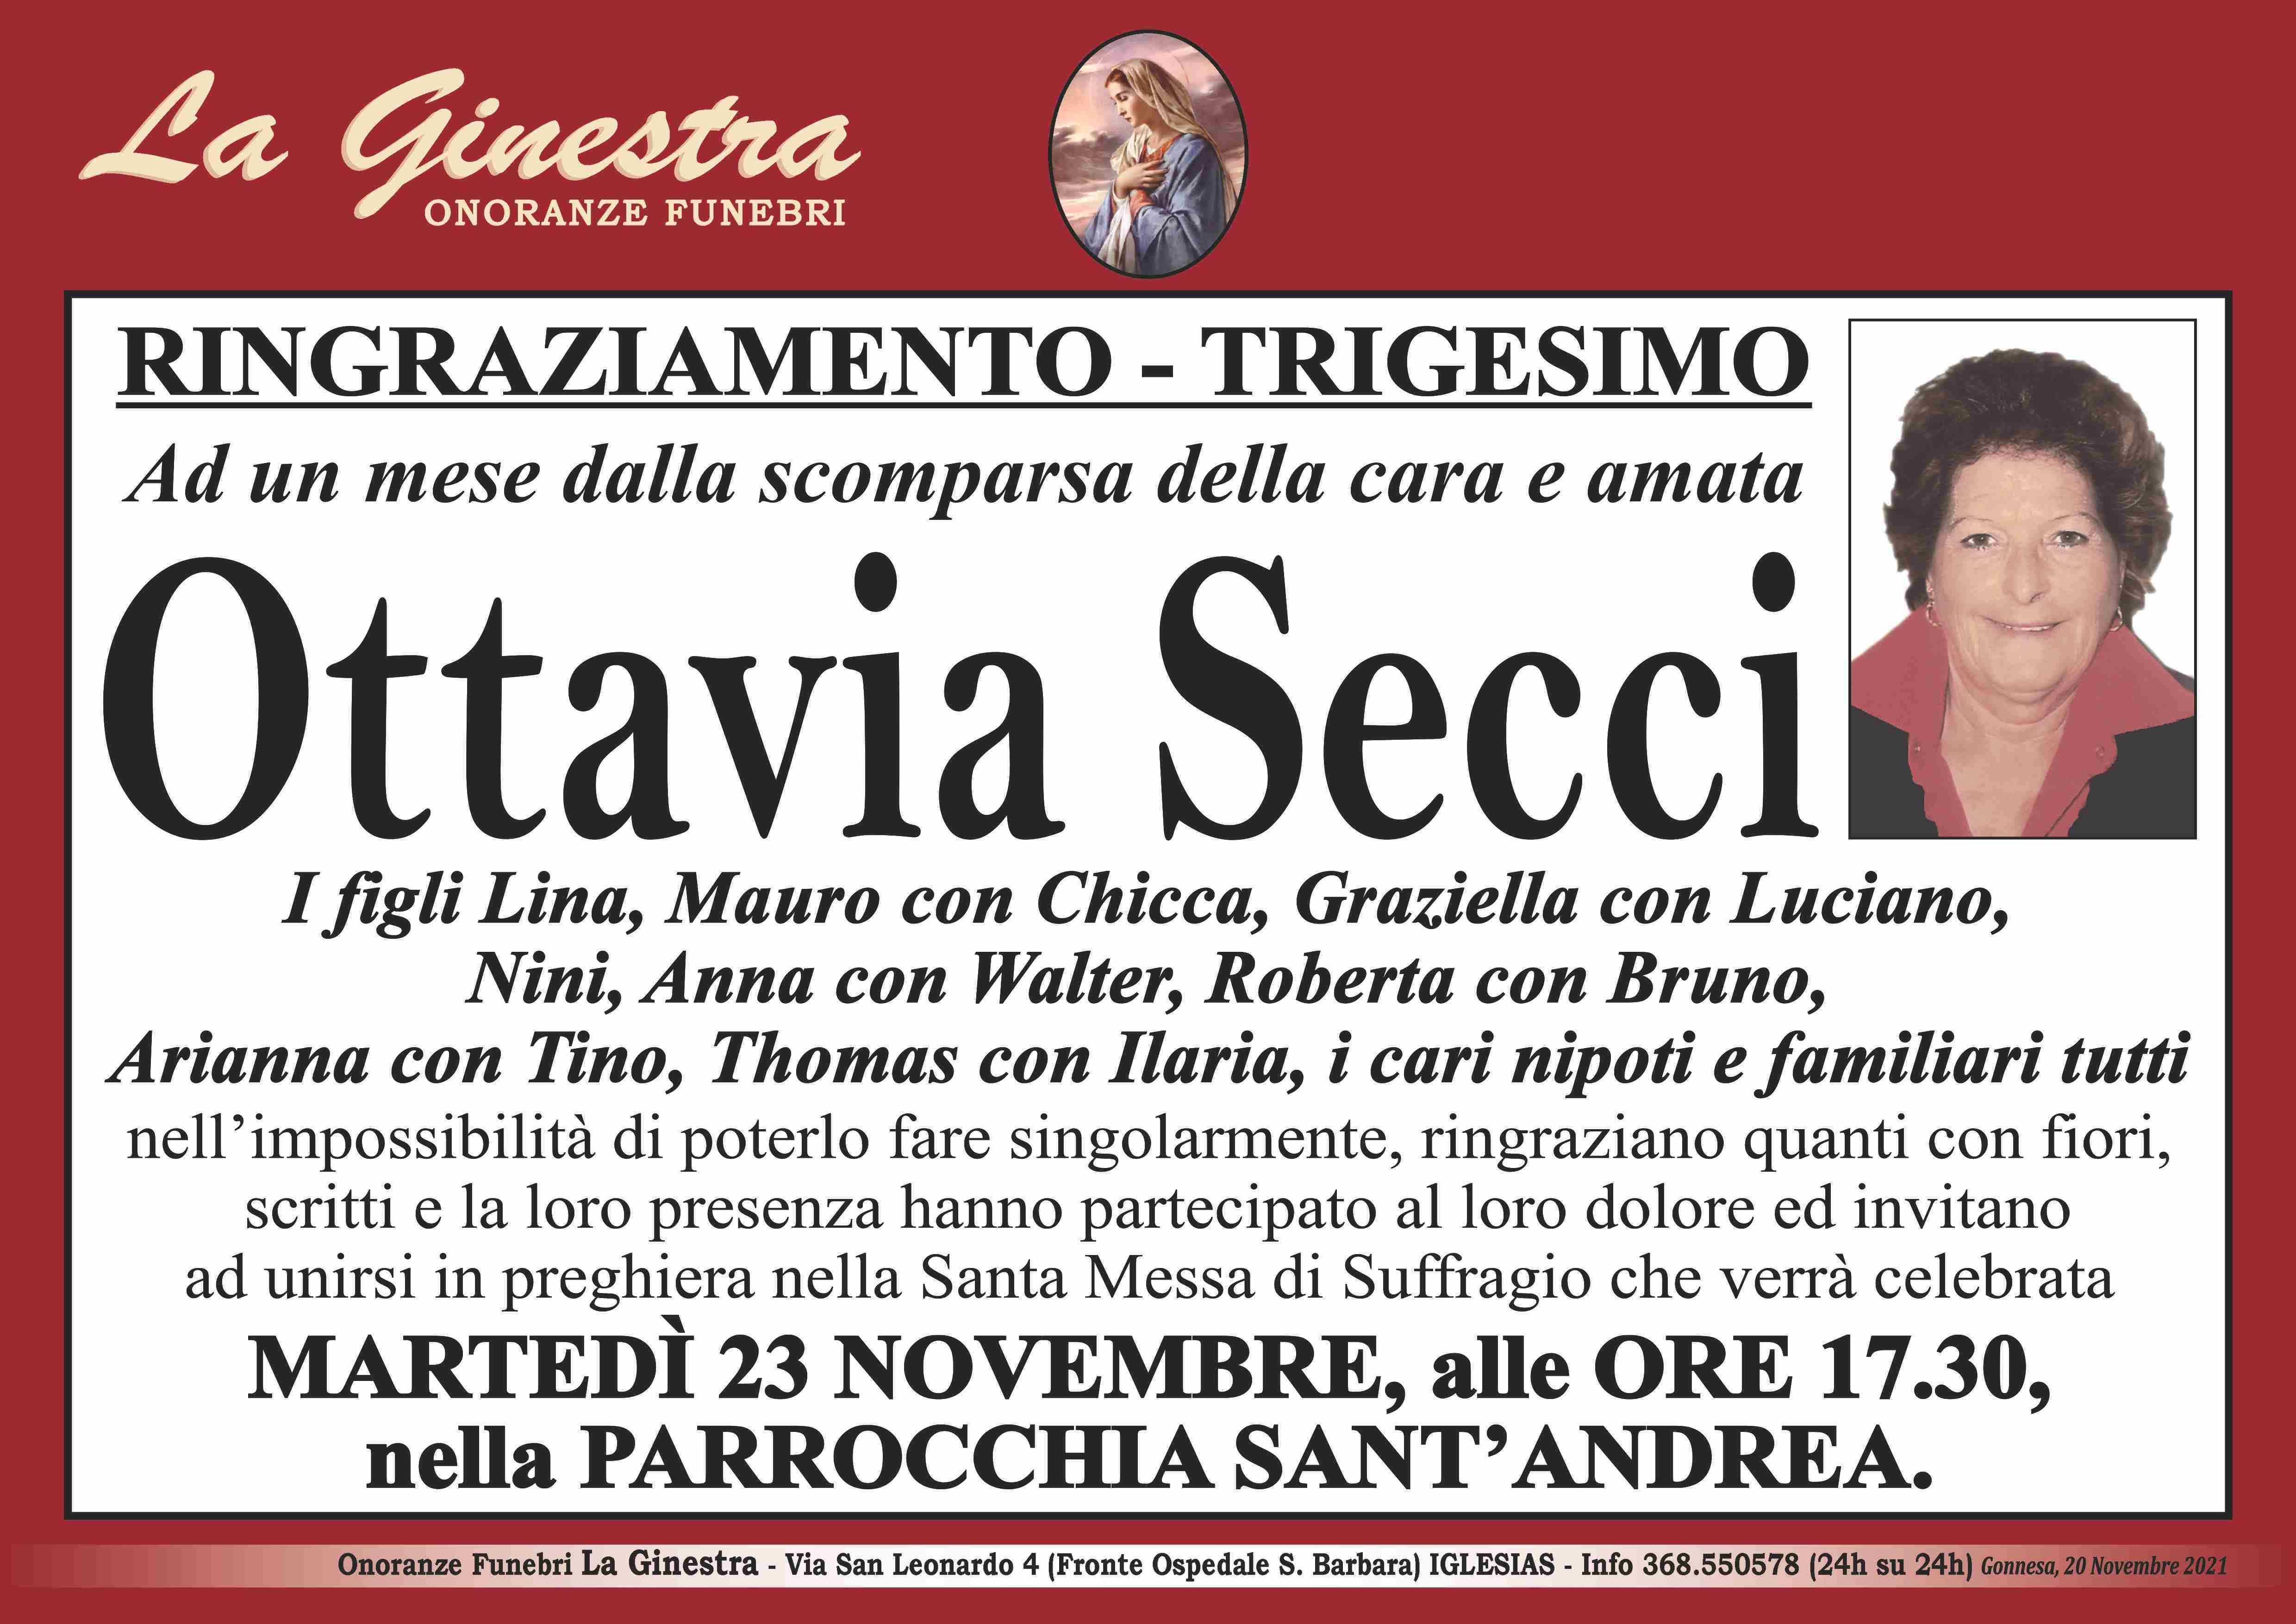 Ottavia Secci